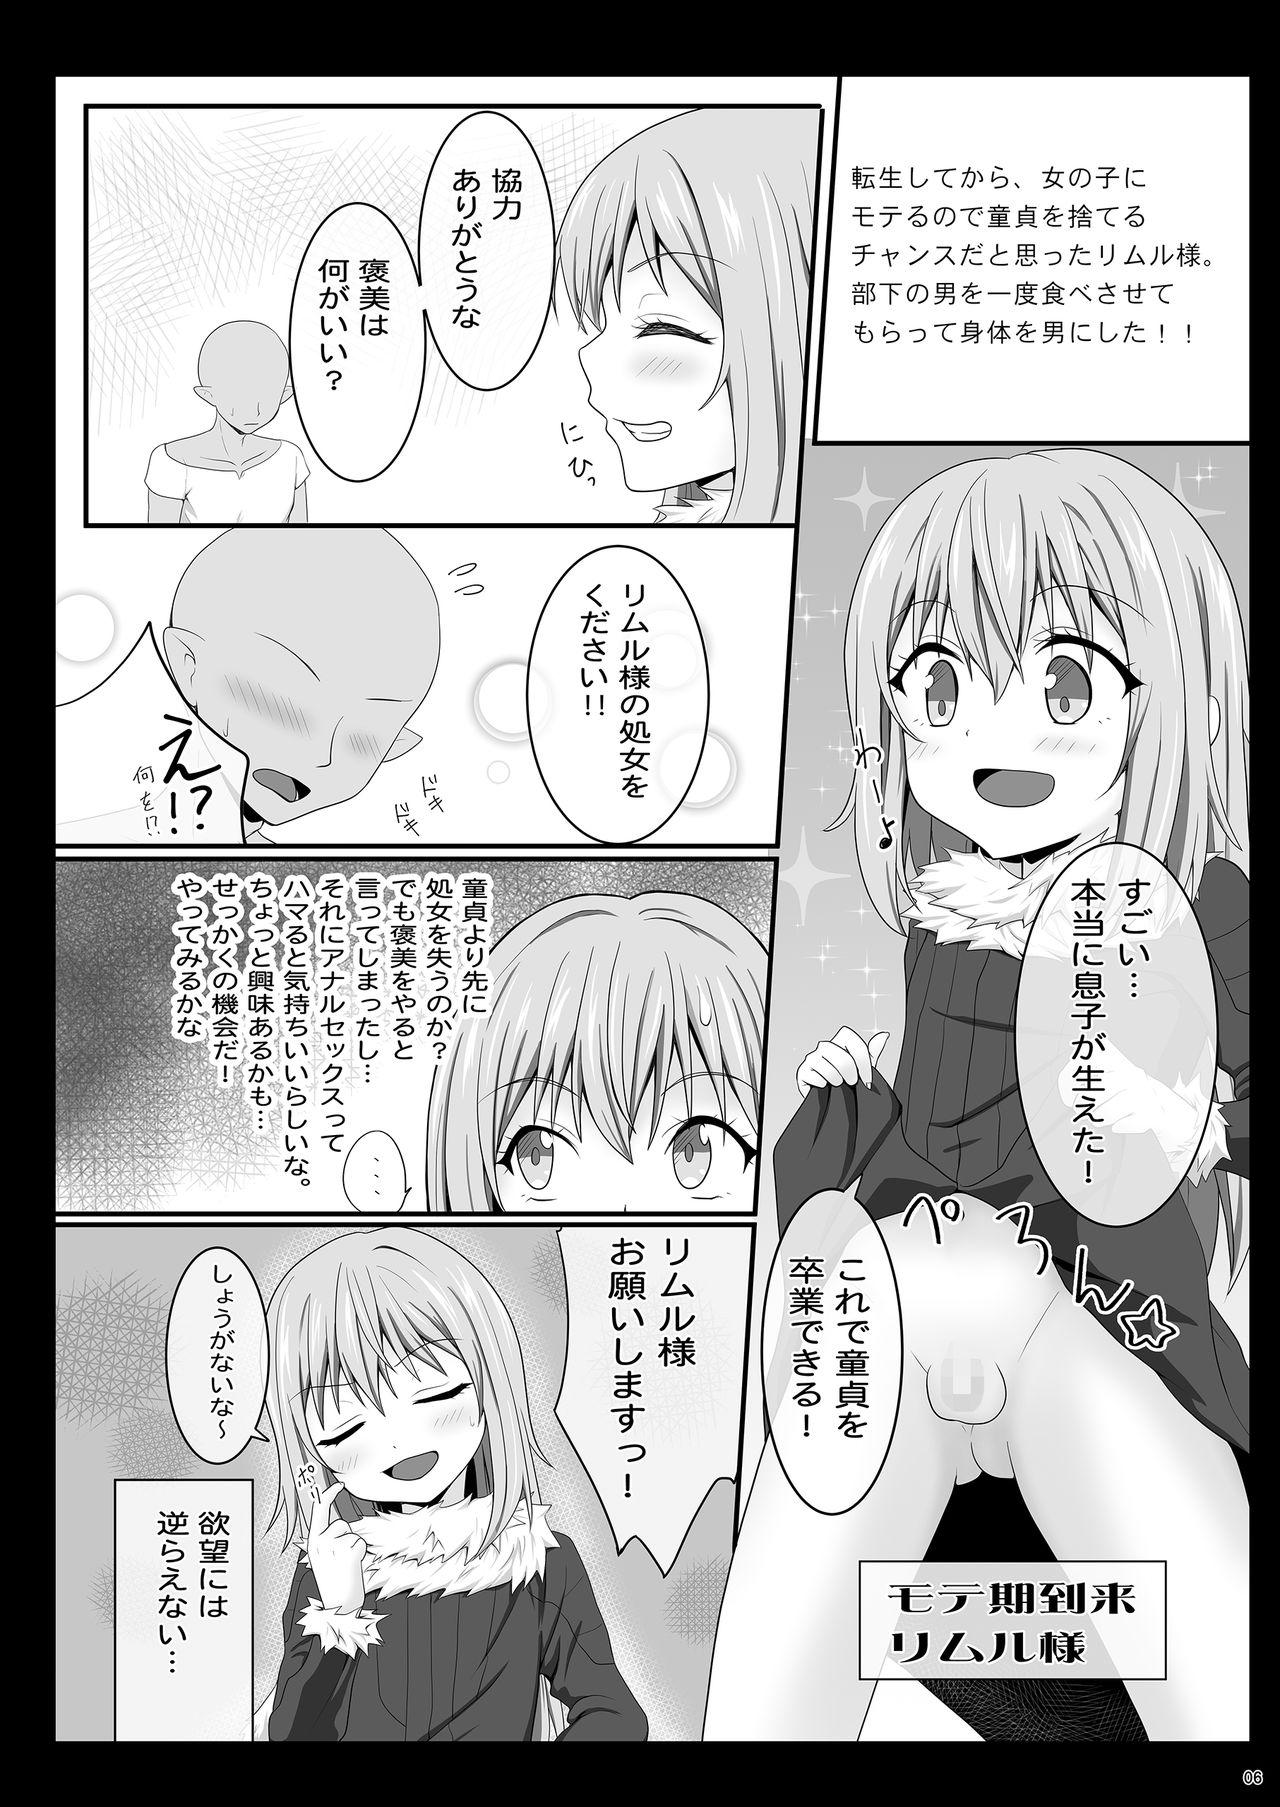 Tranny Sex Etchina Rimuru-sama No Matome - Tensei shitara slime datta ken Free Rough Sex Porn - Page 5